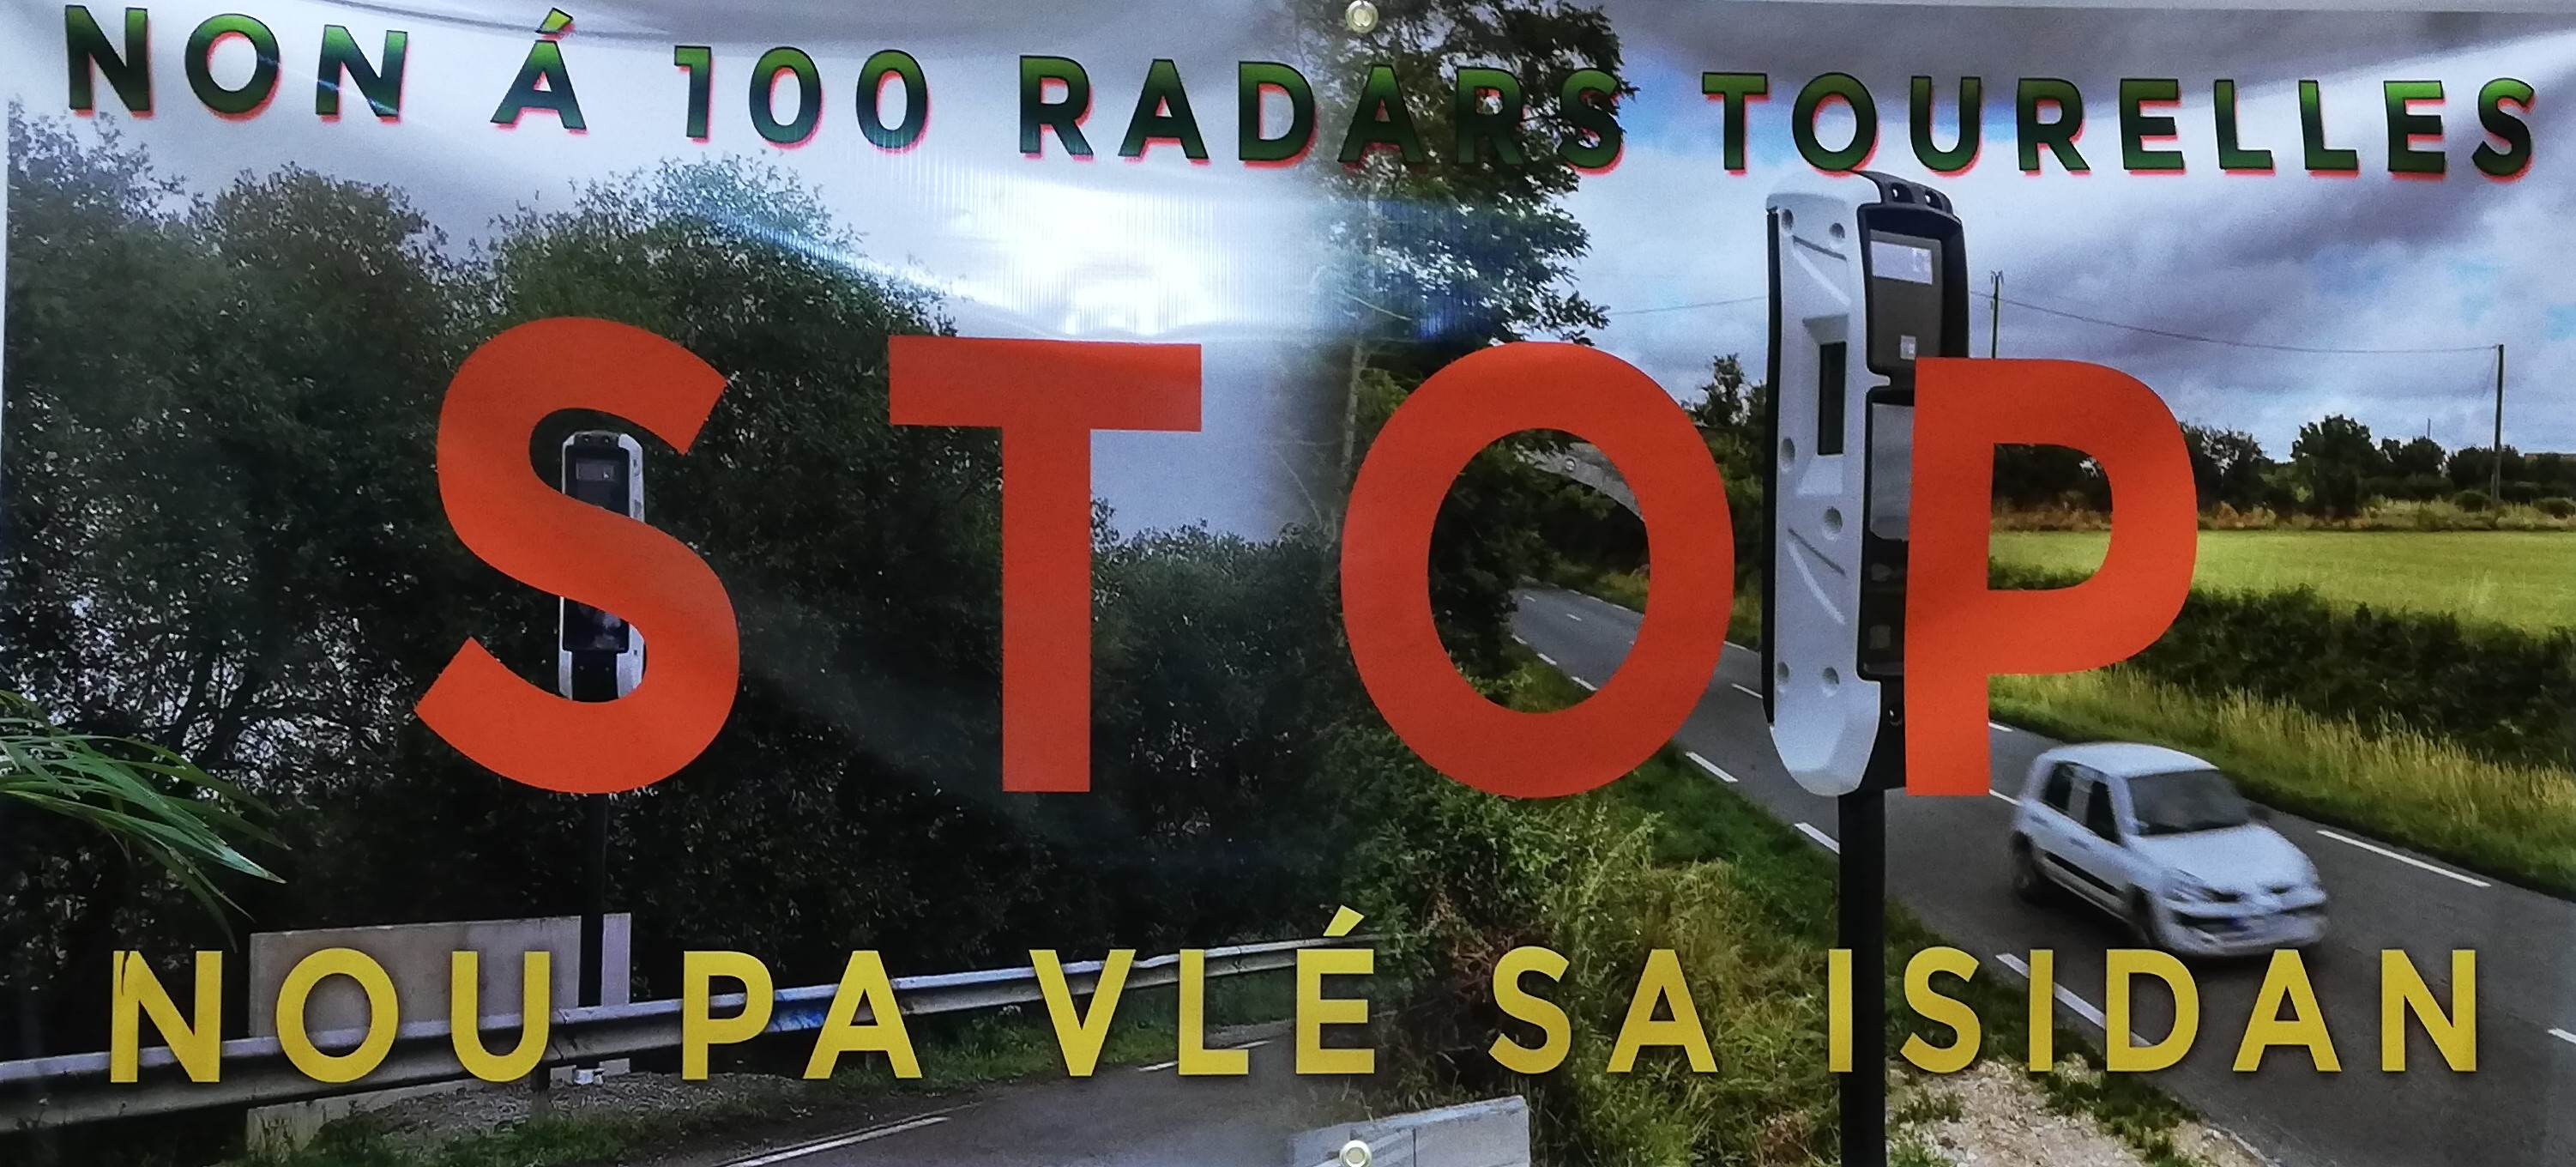     Collectif Sentinelle Guadeloupe : non aux 100 radars tourelles

